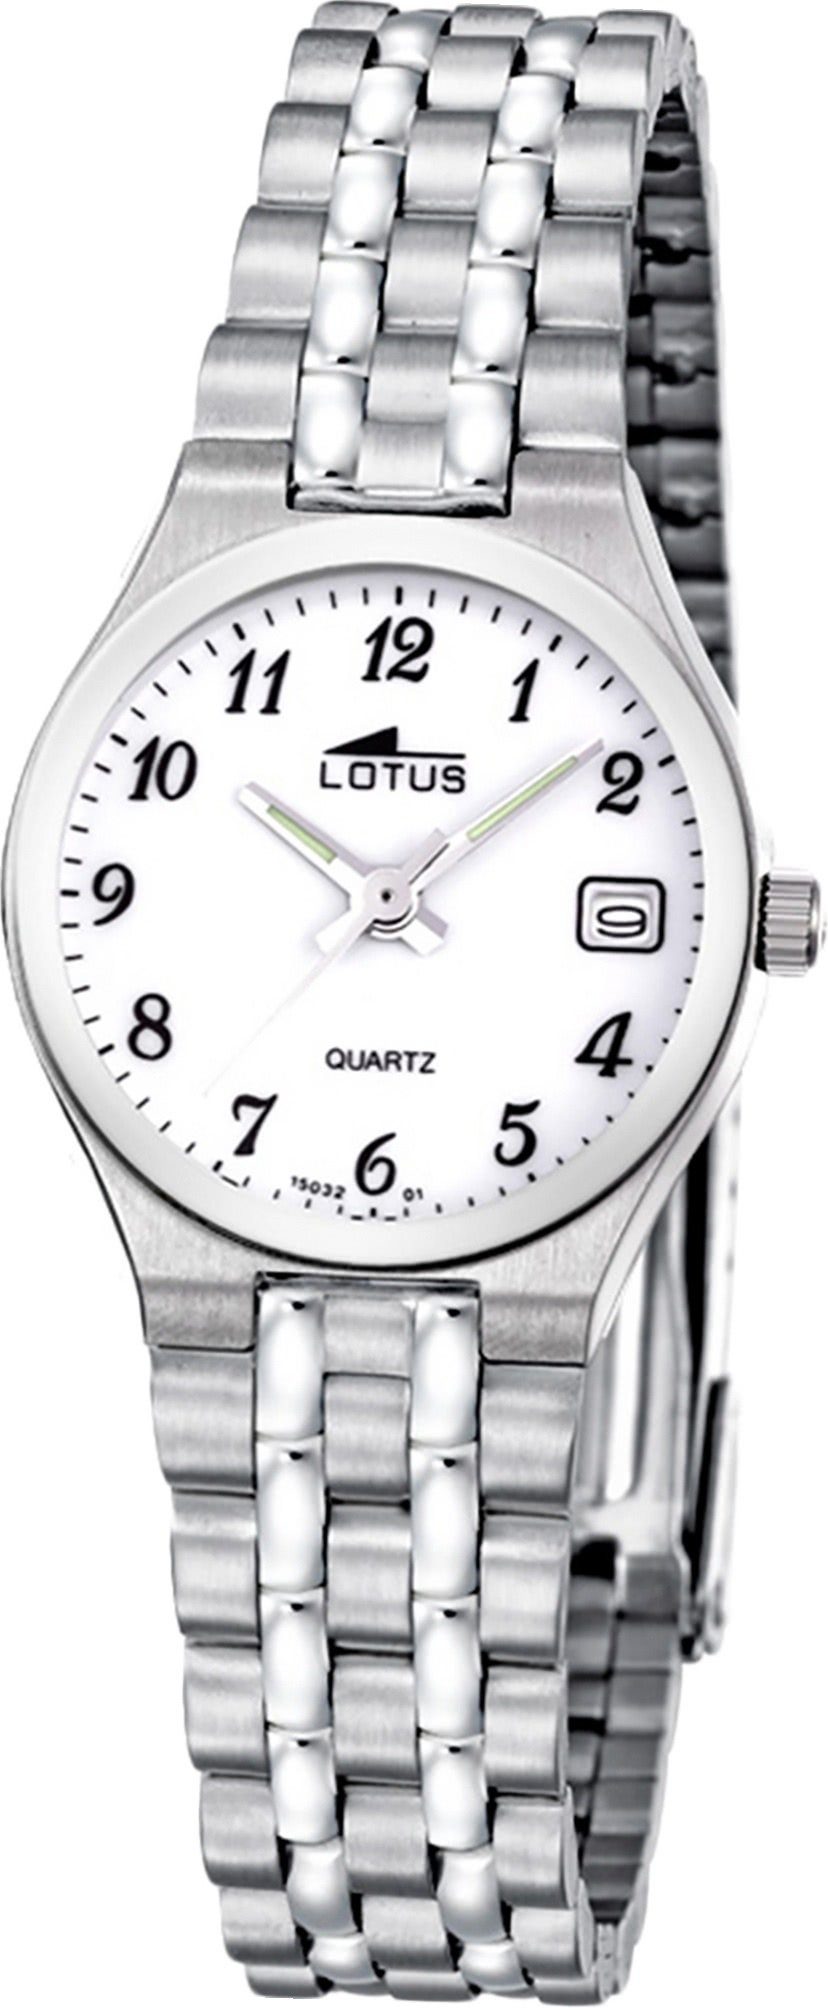 Lotus Quarzuhr Lotus Edelstahl Damen Uhr L15032/1, Damenuhr mit Edelstahlarmband, rundes Gehäuse, klein (ca. 26,3mm), Ele